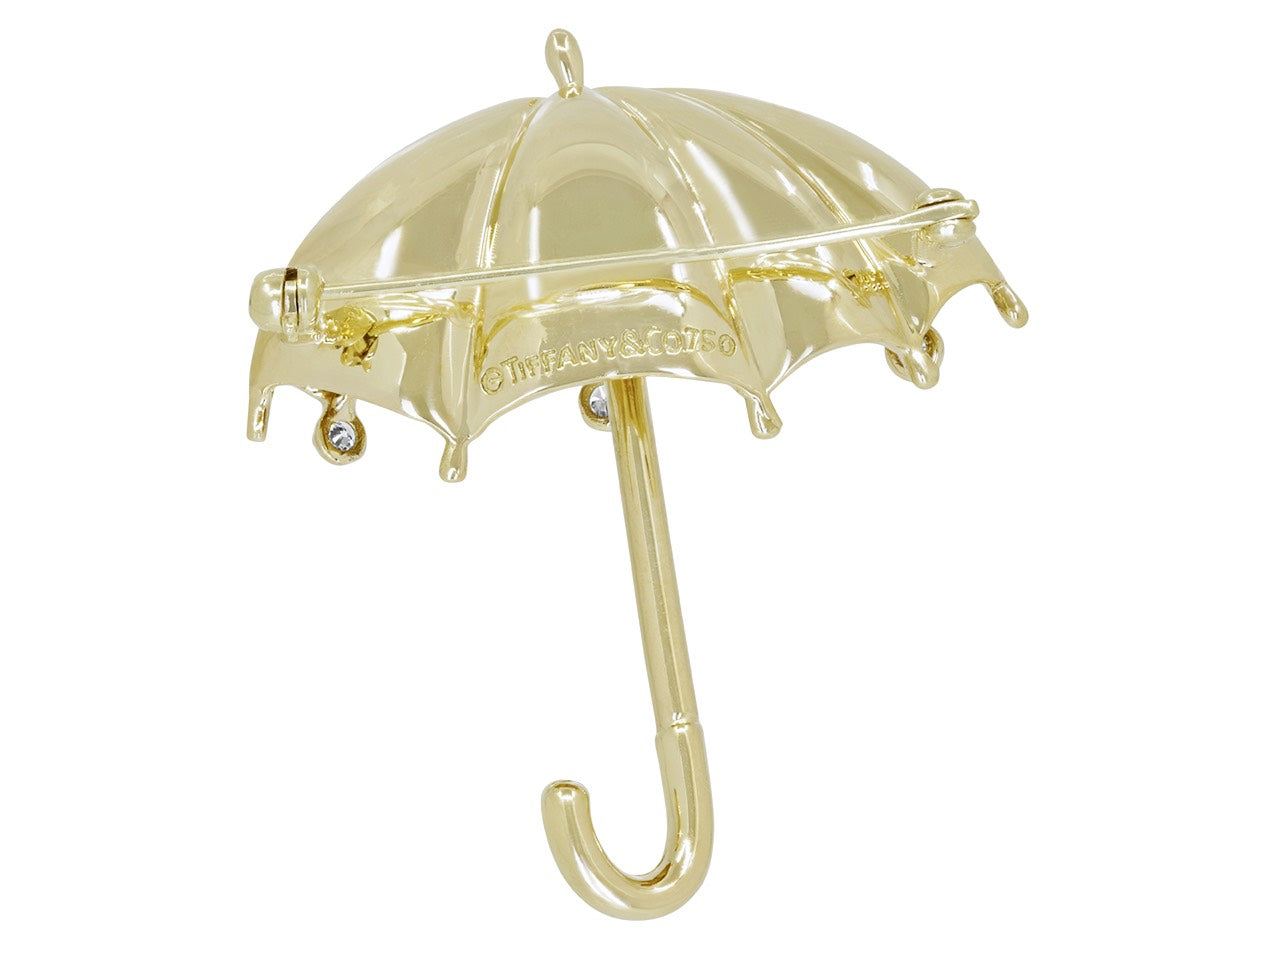 Tiffany & Co. Umbrella Brooch in 18K Gold